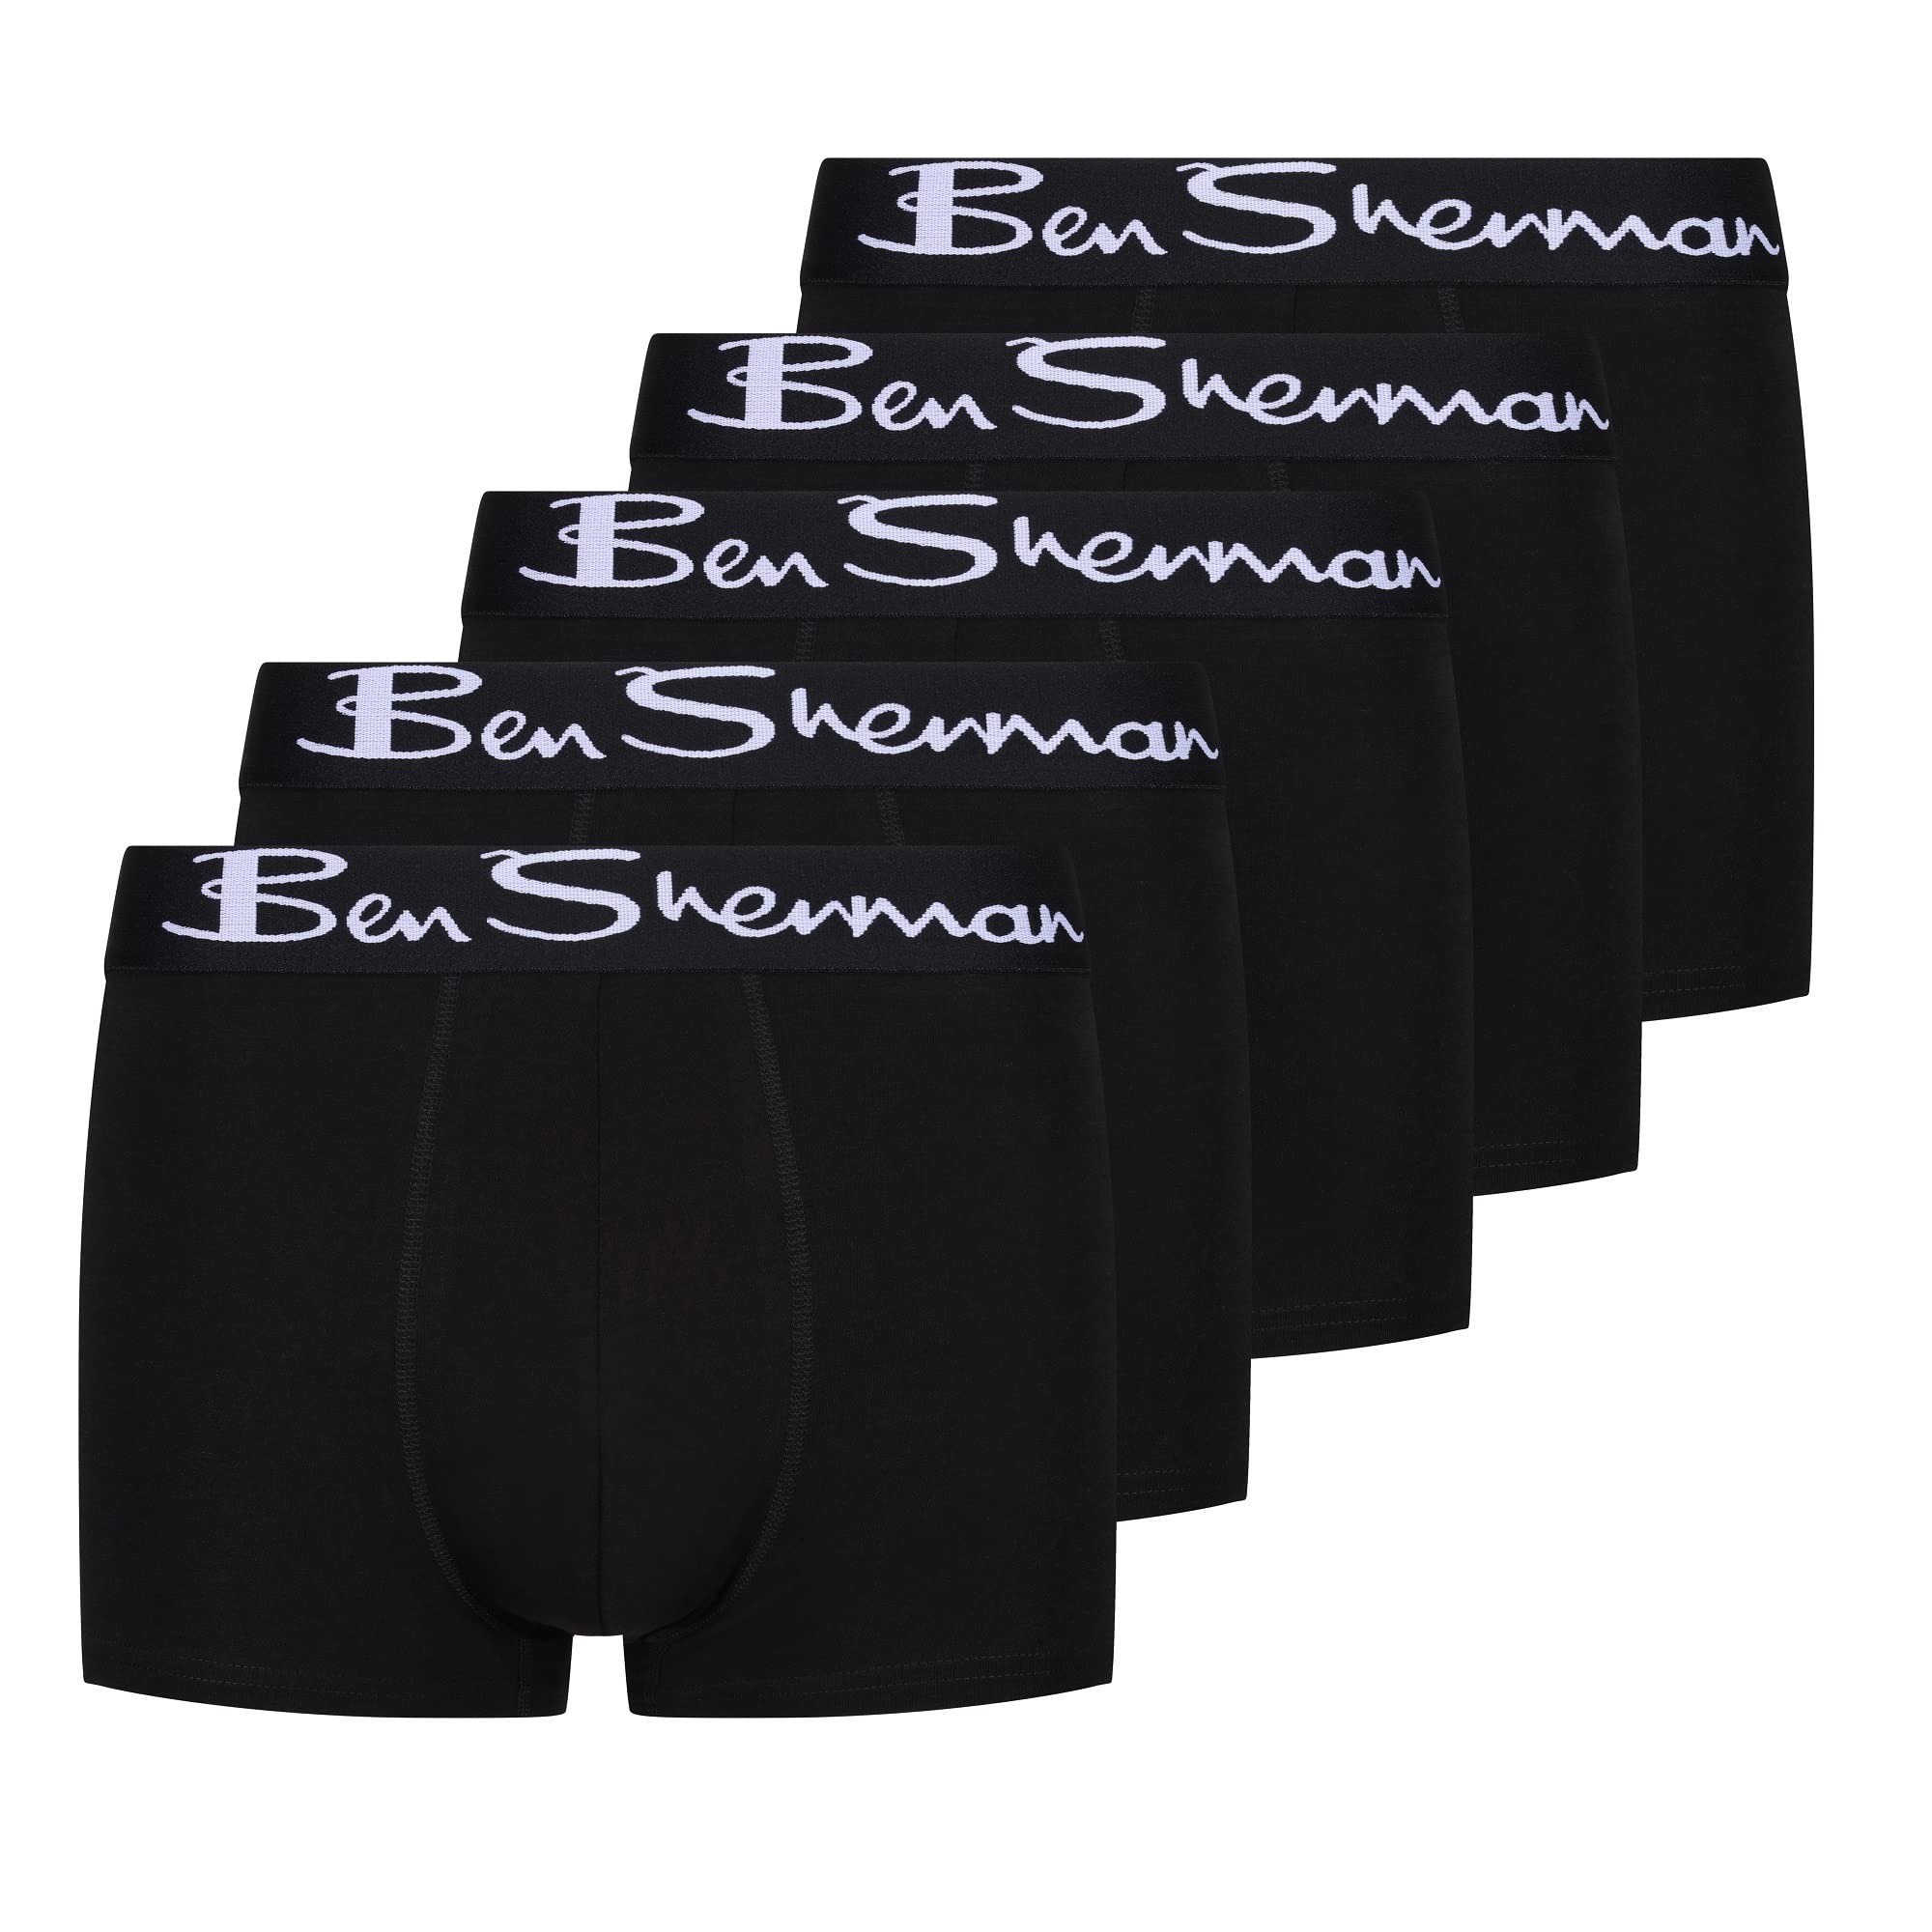 Ben Sherman Herren U5_1399_BS_M Podrick Schwarze Boxershorts, weiche Baumwolle mit kontrastierendem weißen elastischen Bund | Bequeme und atmungsaktive Unterwäsche – 5er-Pack, Black, M